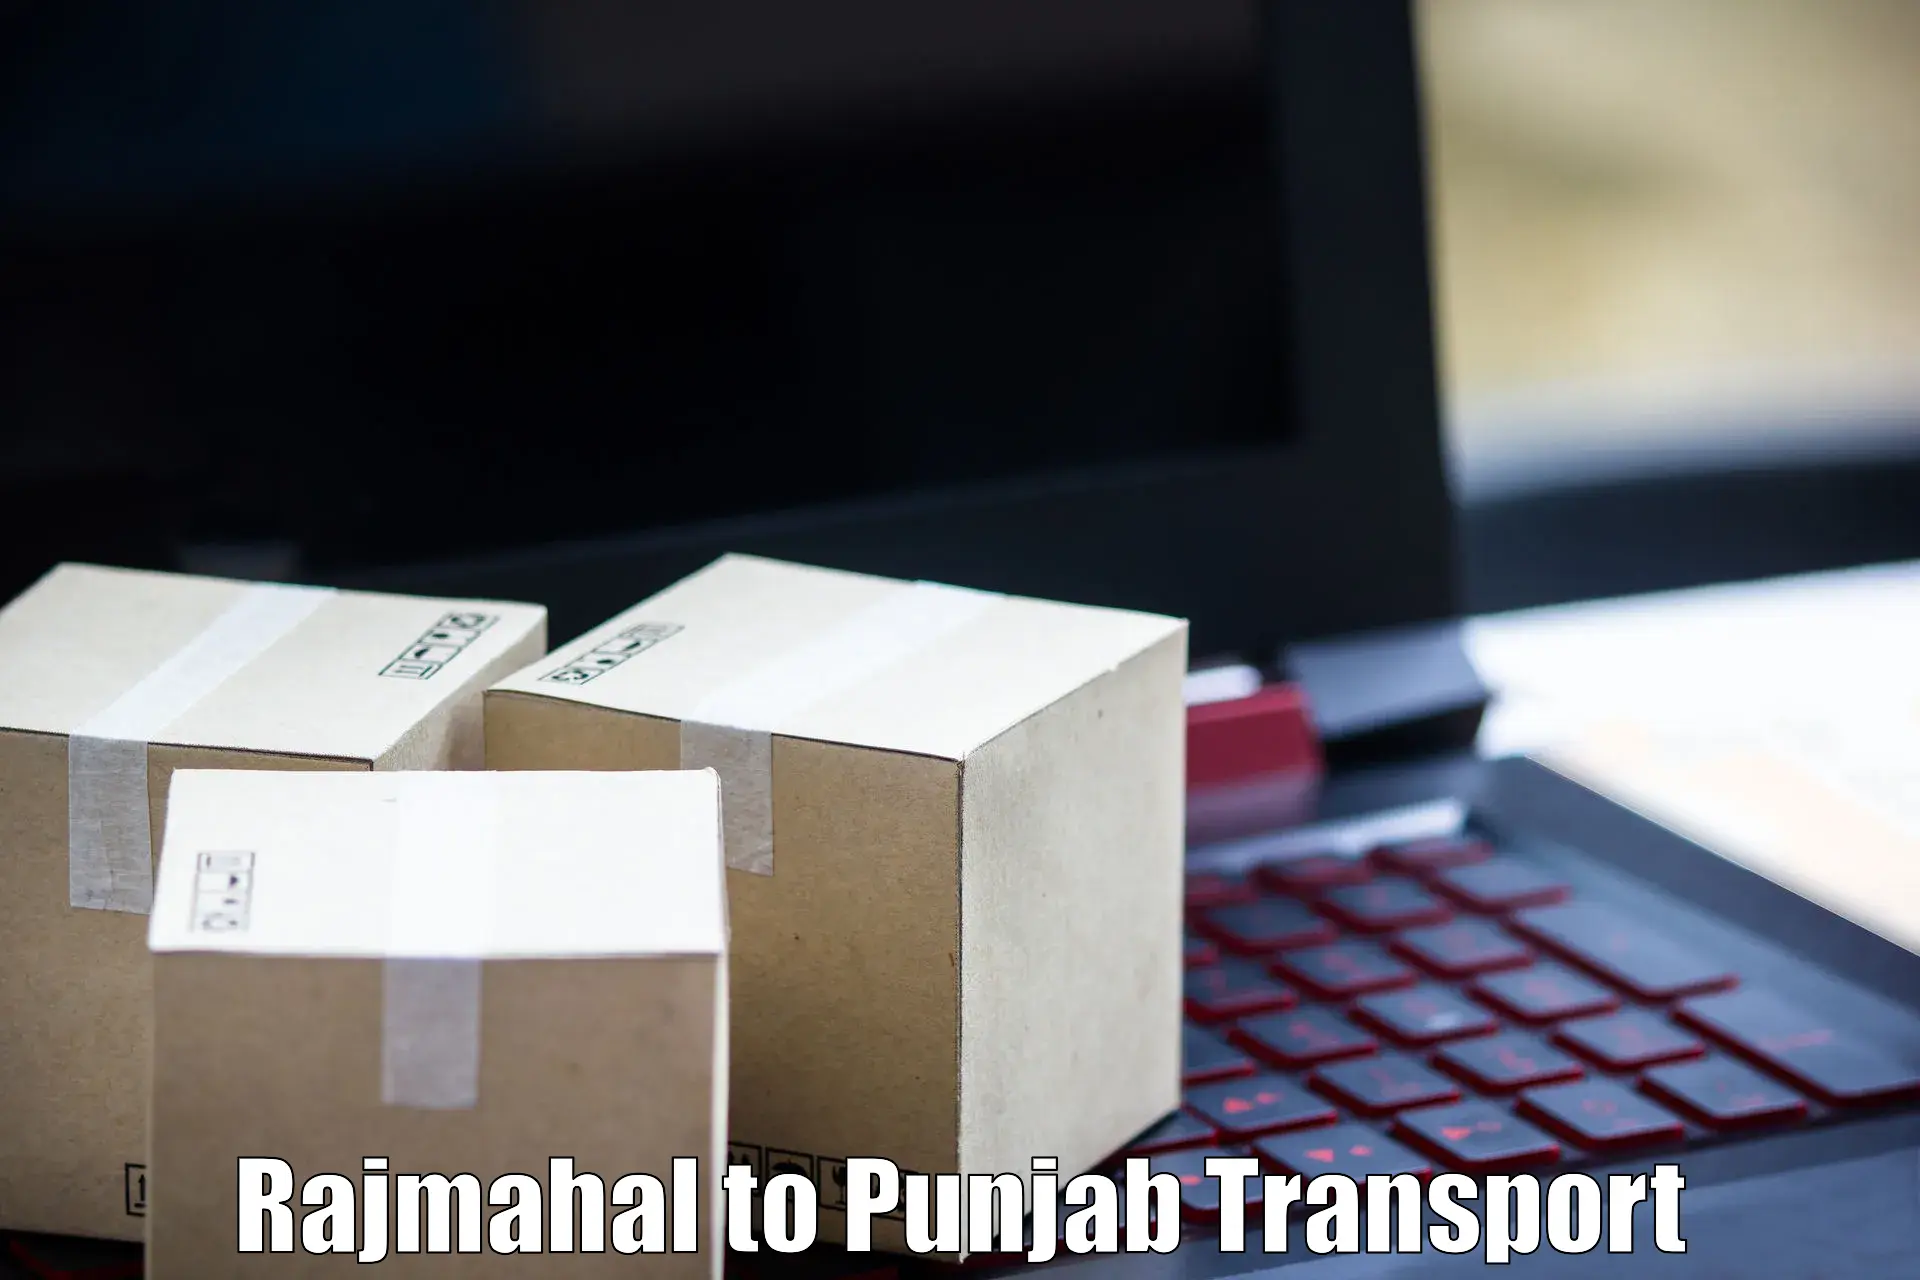 Online transport Rajmahal to Begowal